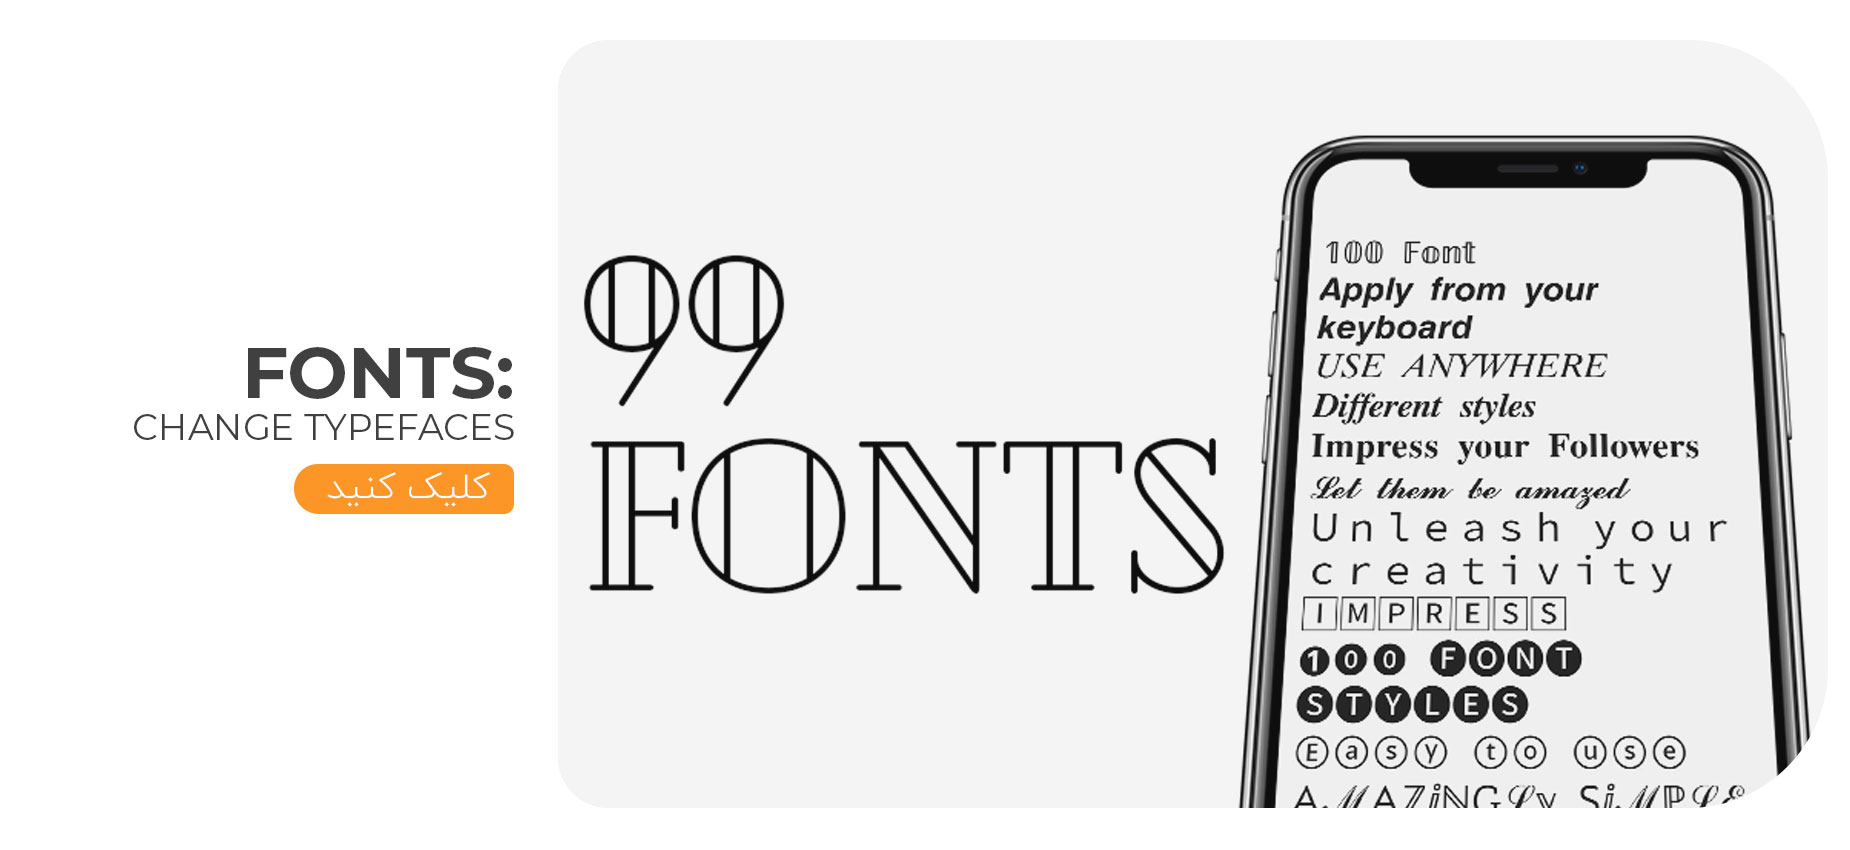 تغییر فونت اینستاگرام با استفاده از اپلیکیشن fonts: change typefacesدر آندروید